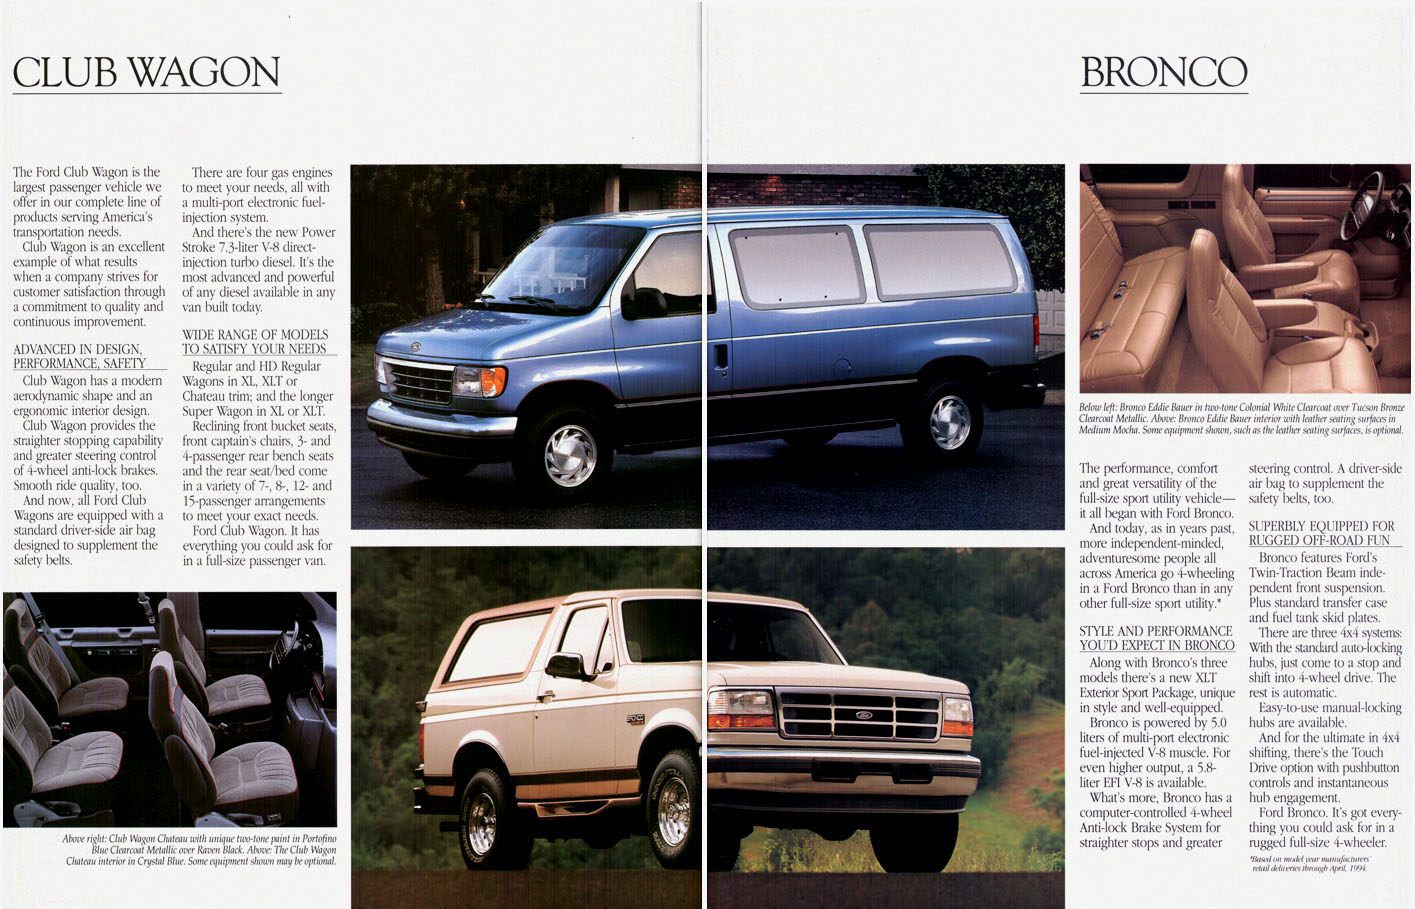 1995_Ford_Trucks-06-07